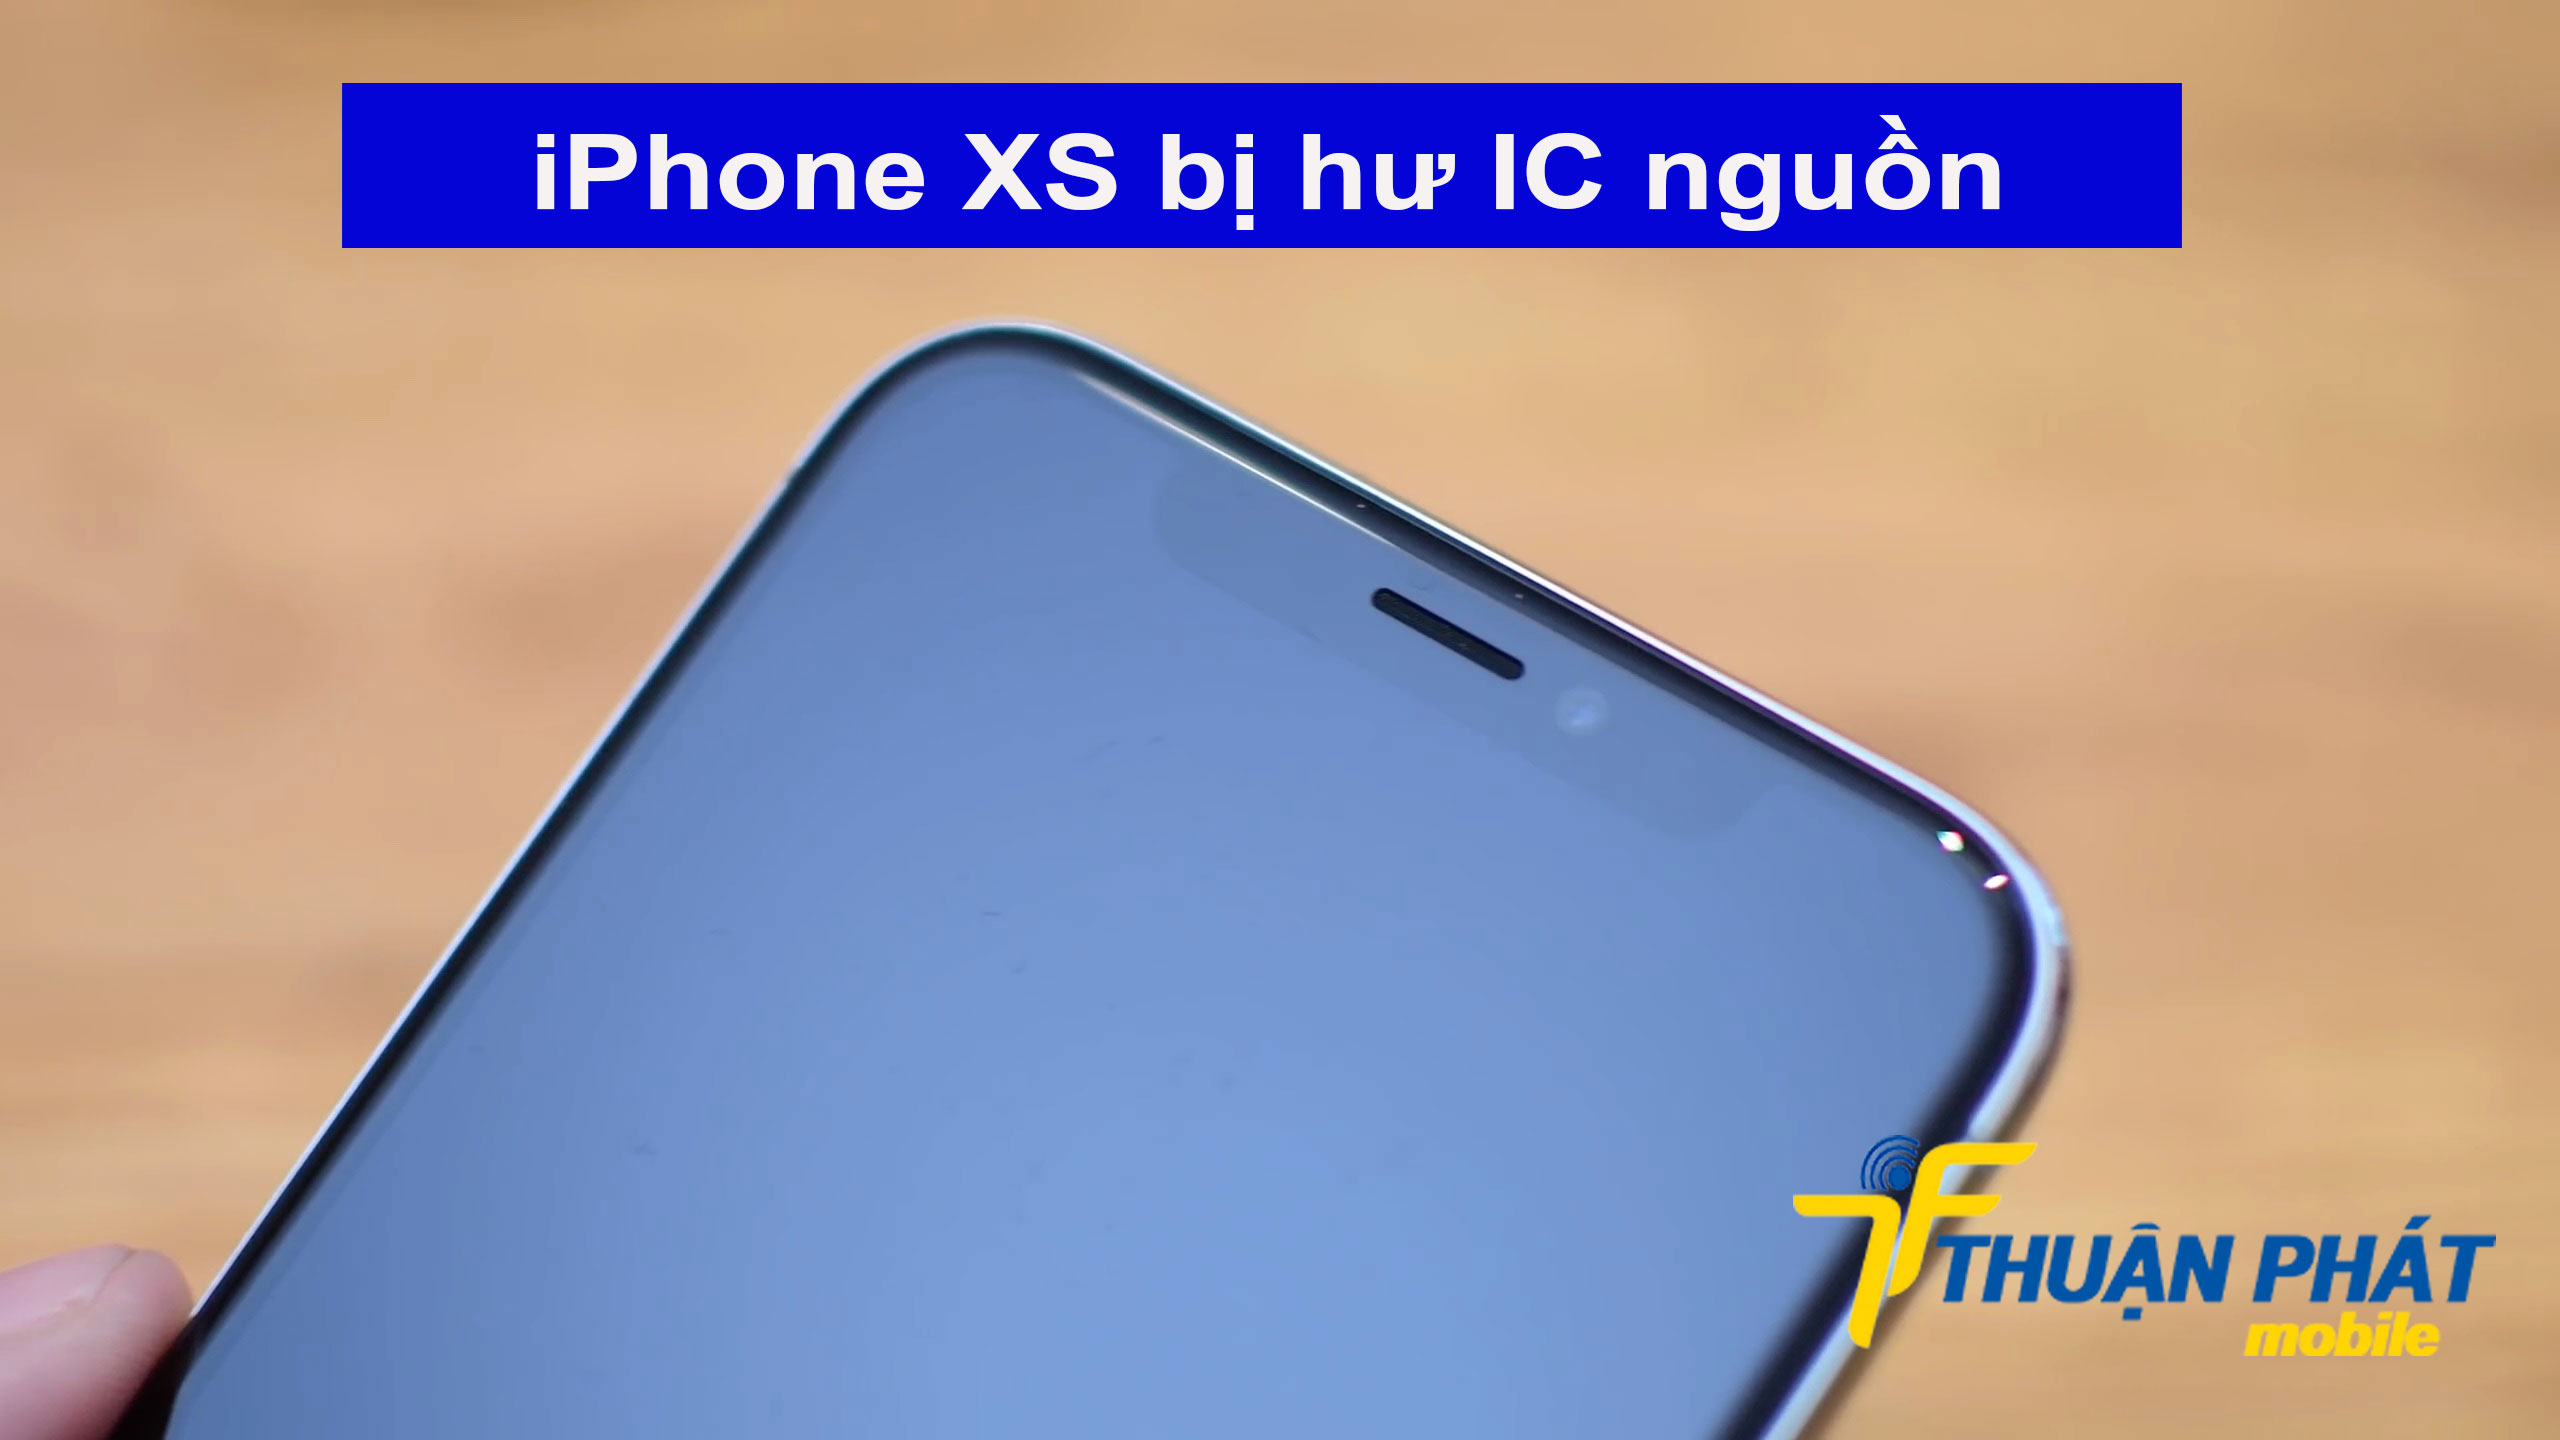 iPhone XS bị hư IC nguồn